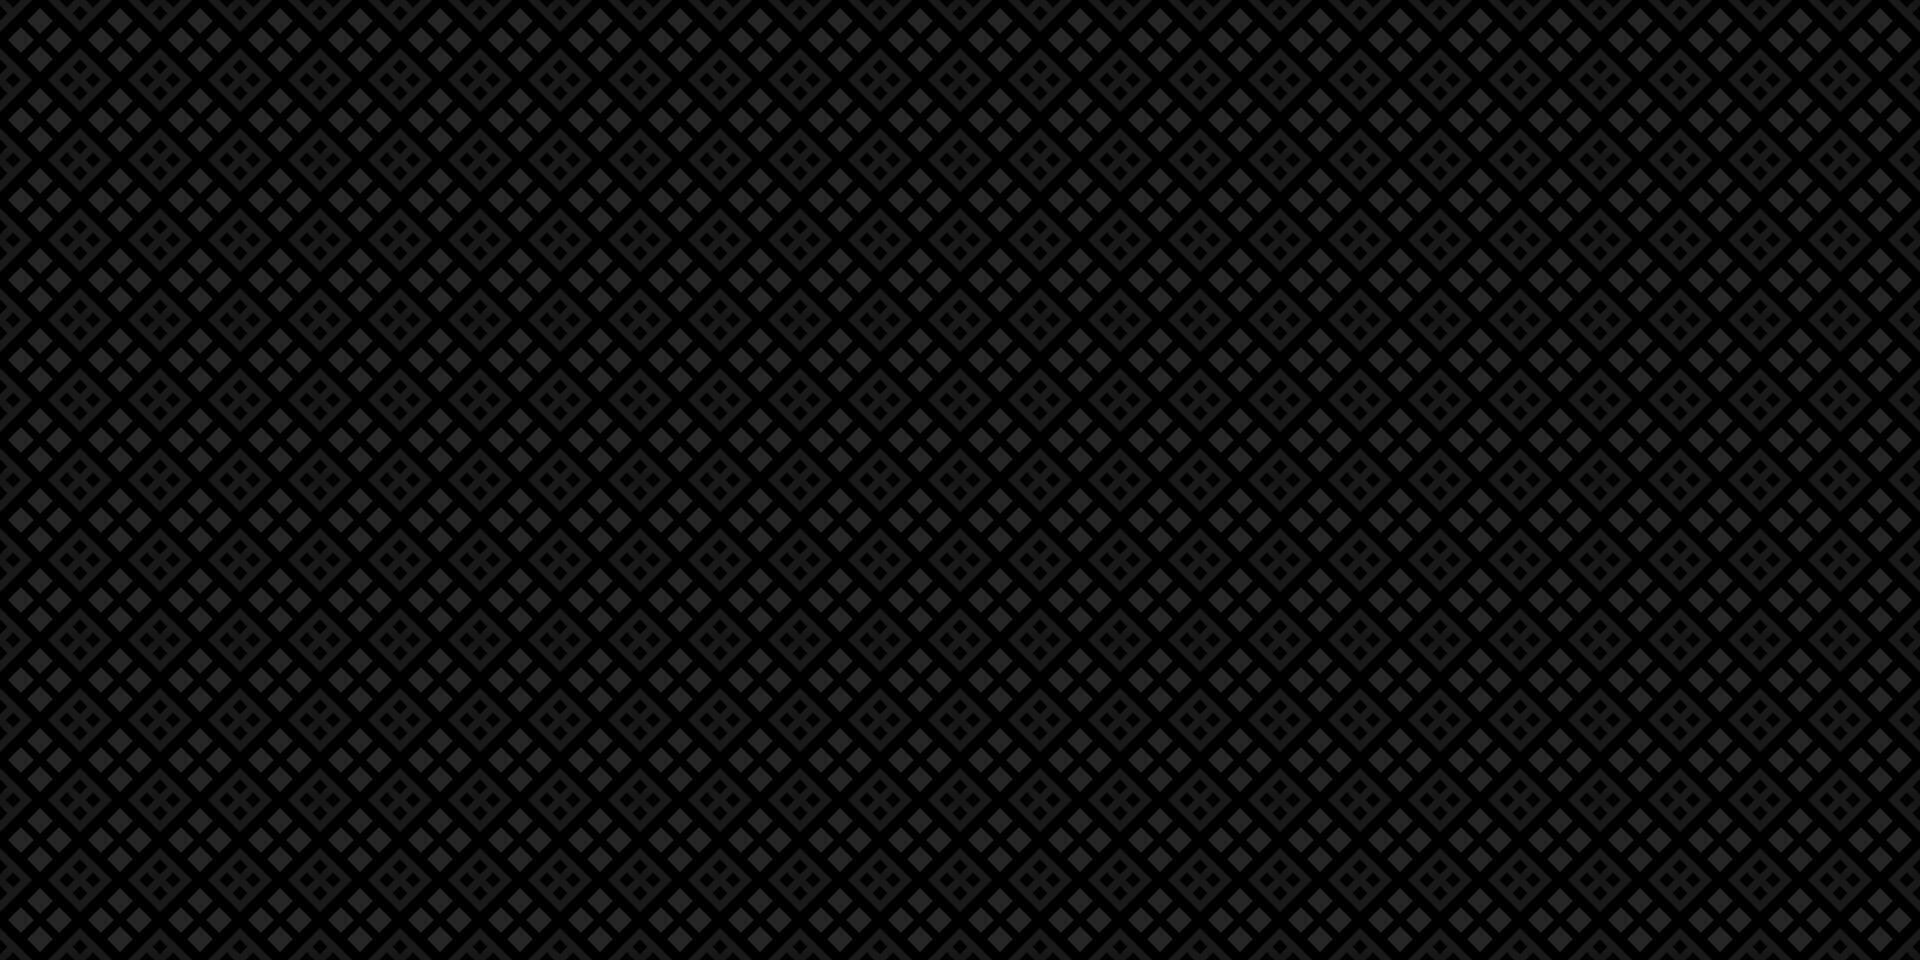 donker zwart meetkundig rooster koolstof vezel achtergrond modern donker abstract naadloos structuur vector